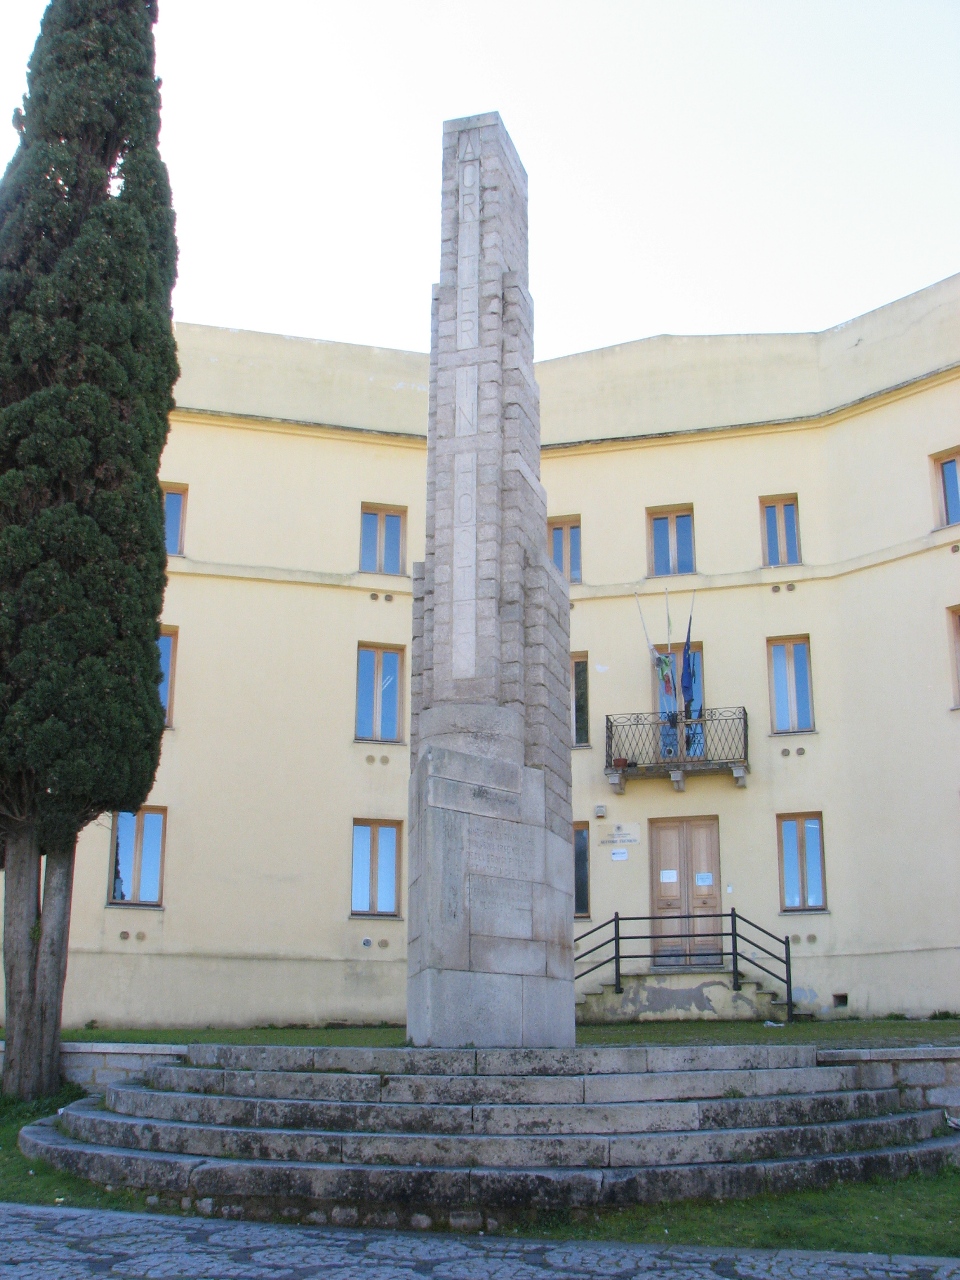 Monumento ai caduti - a stele